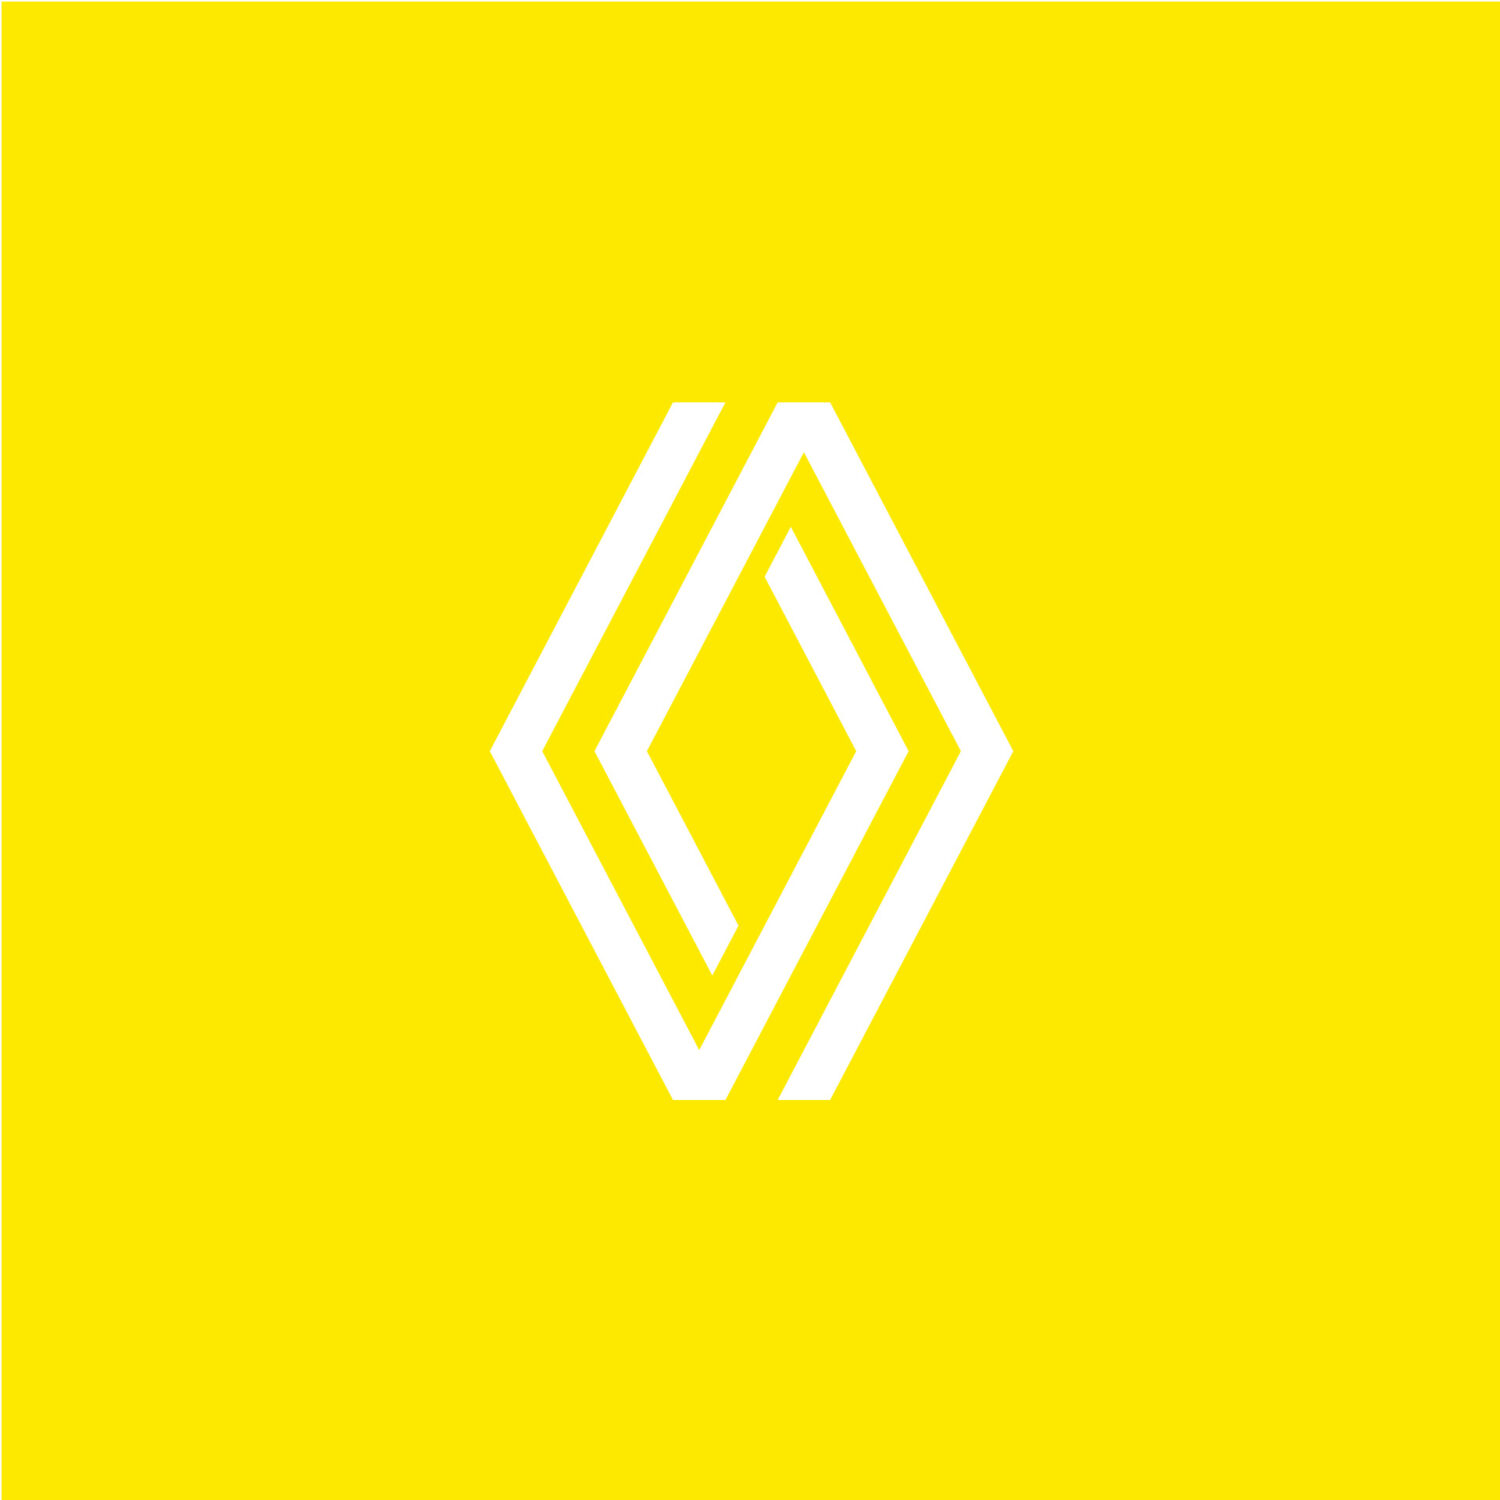 2021 - Nouveau Logo Renault